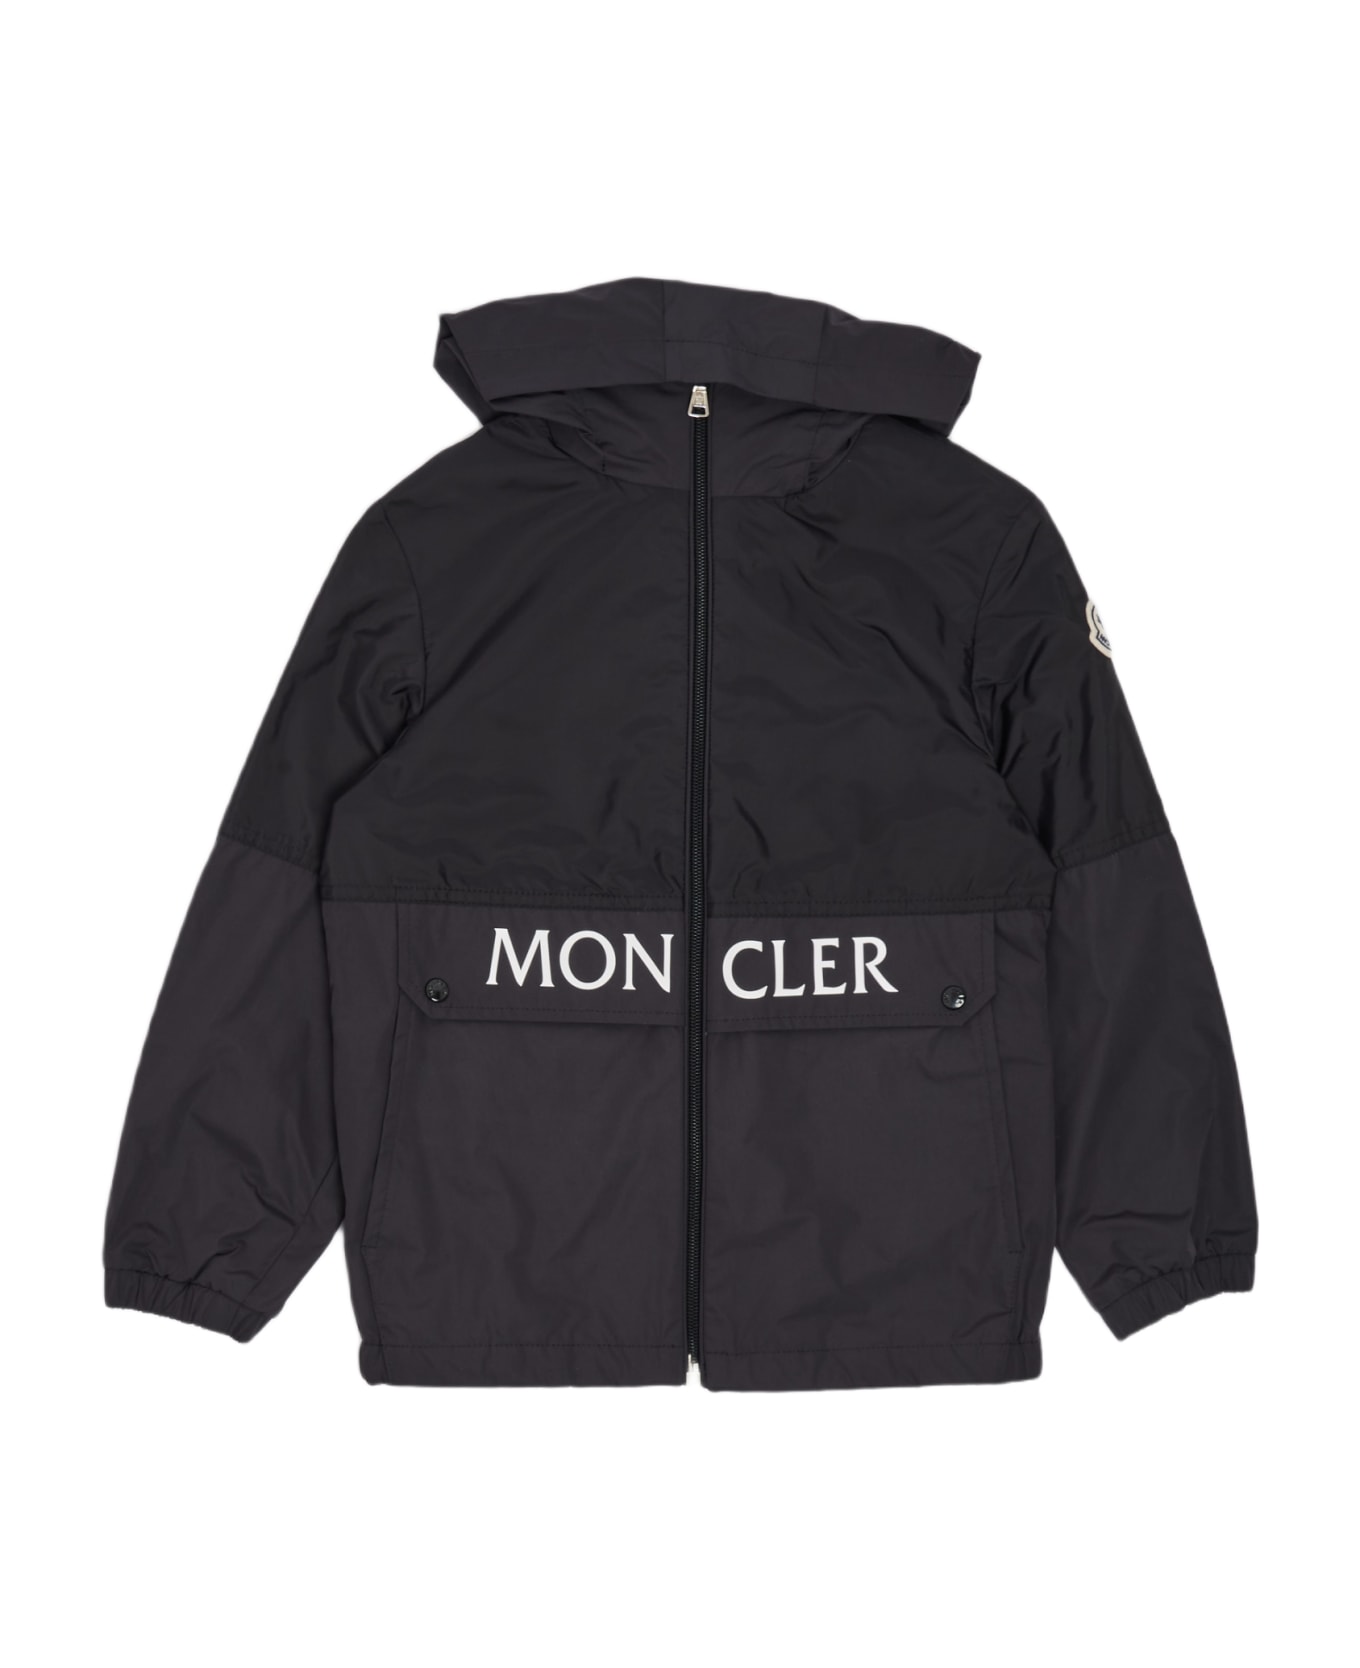 Moncler Jacket Jacket - NERO